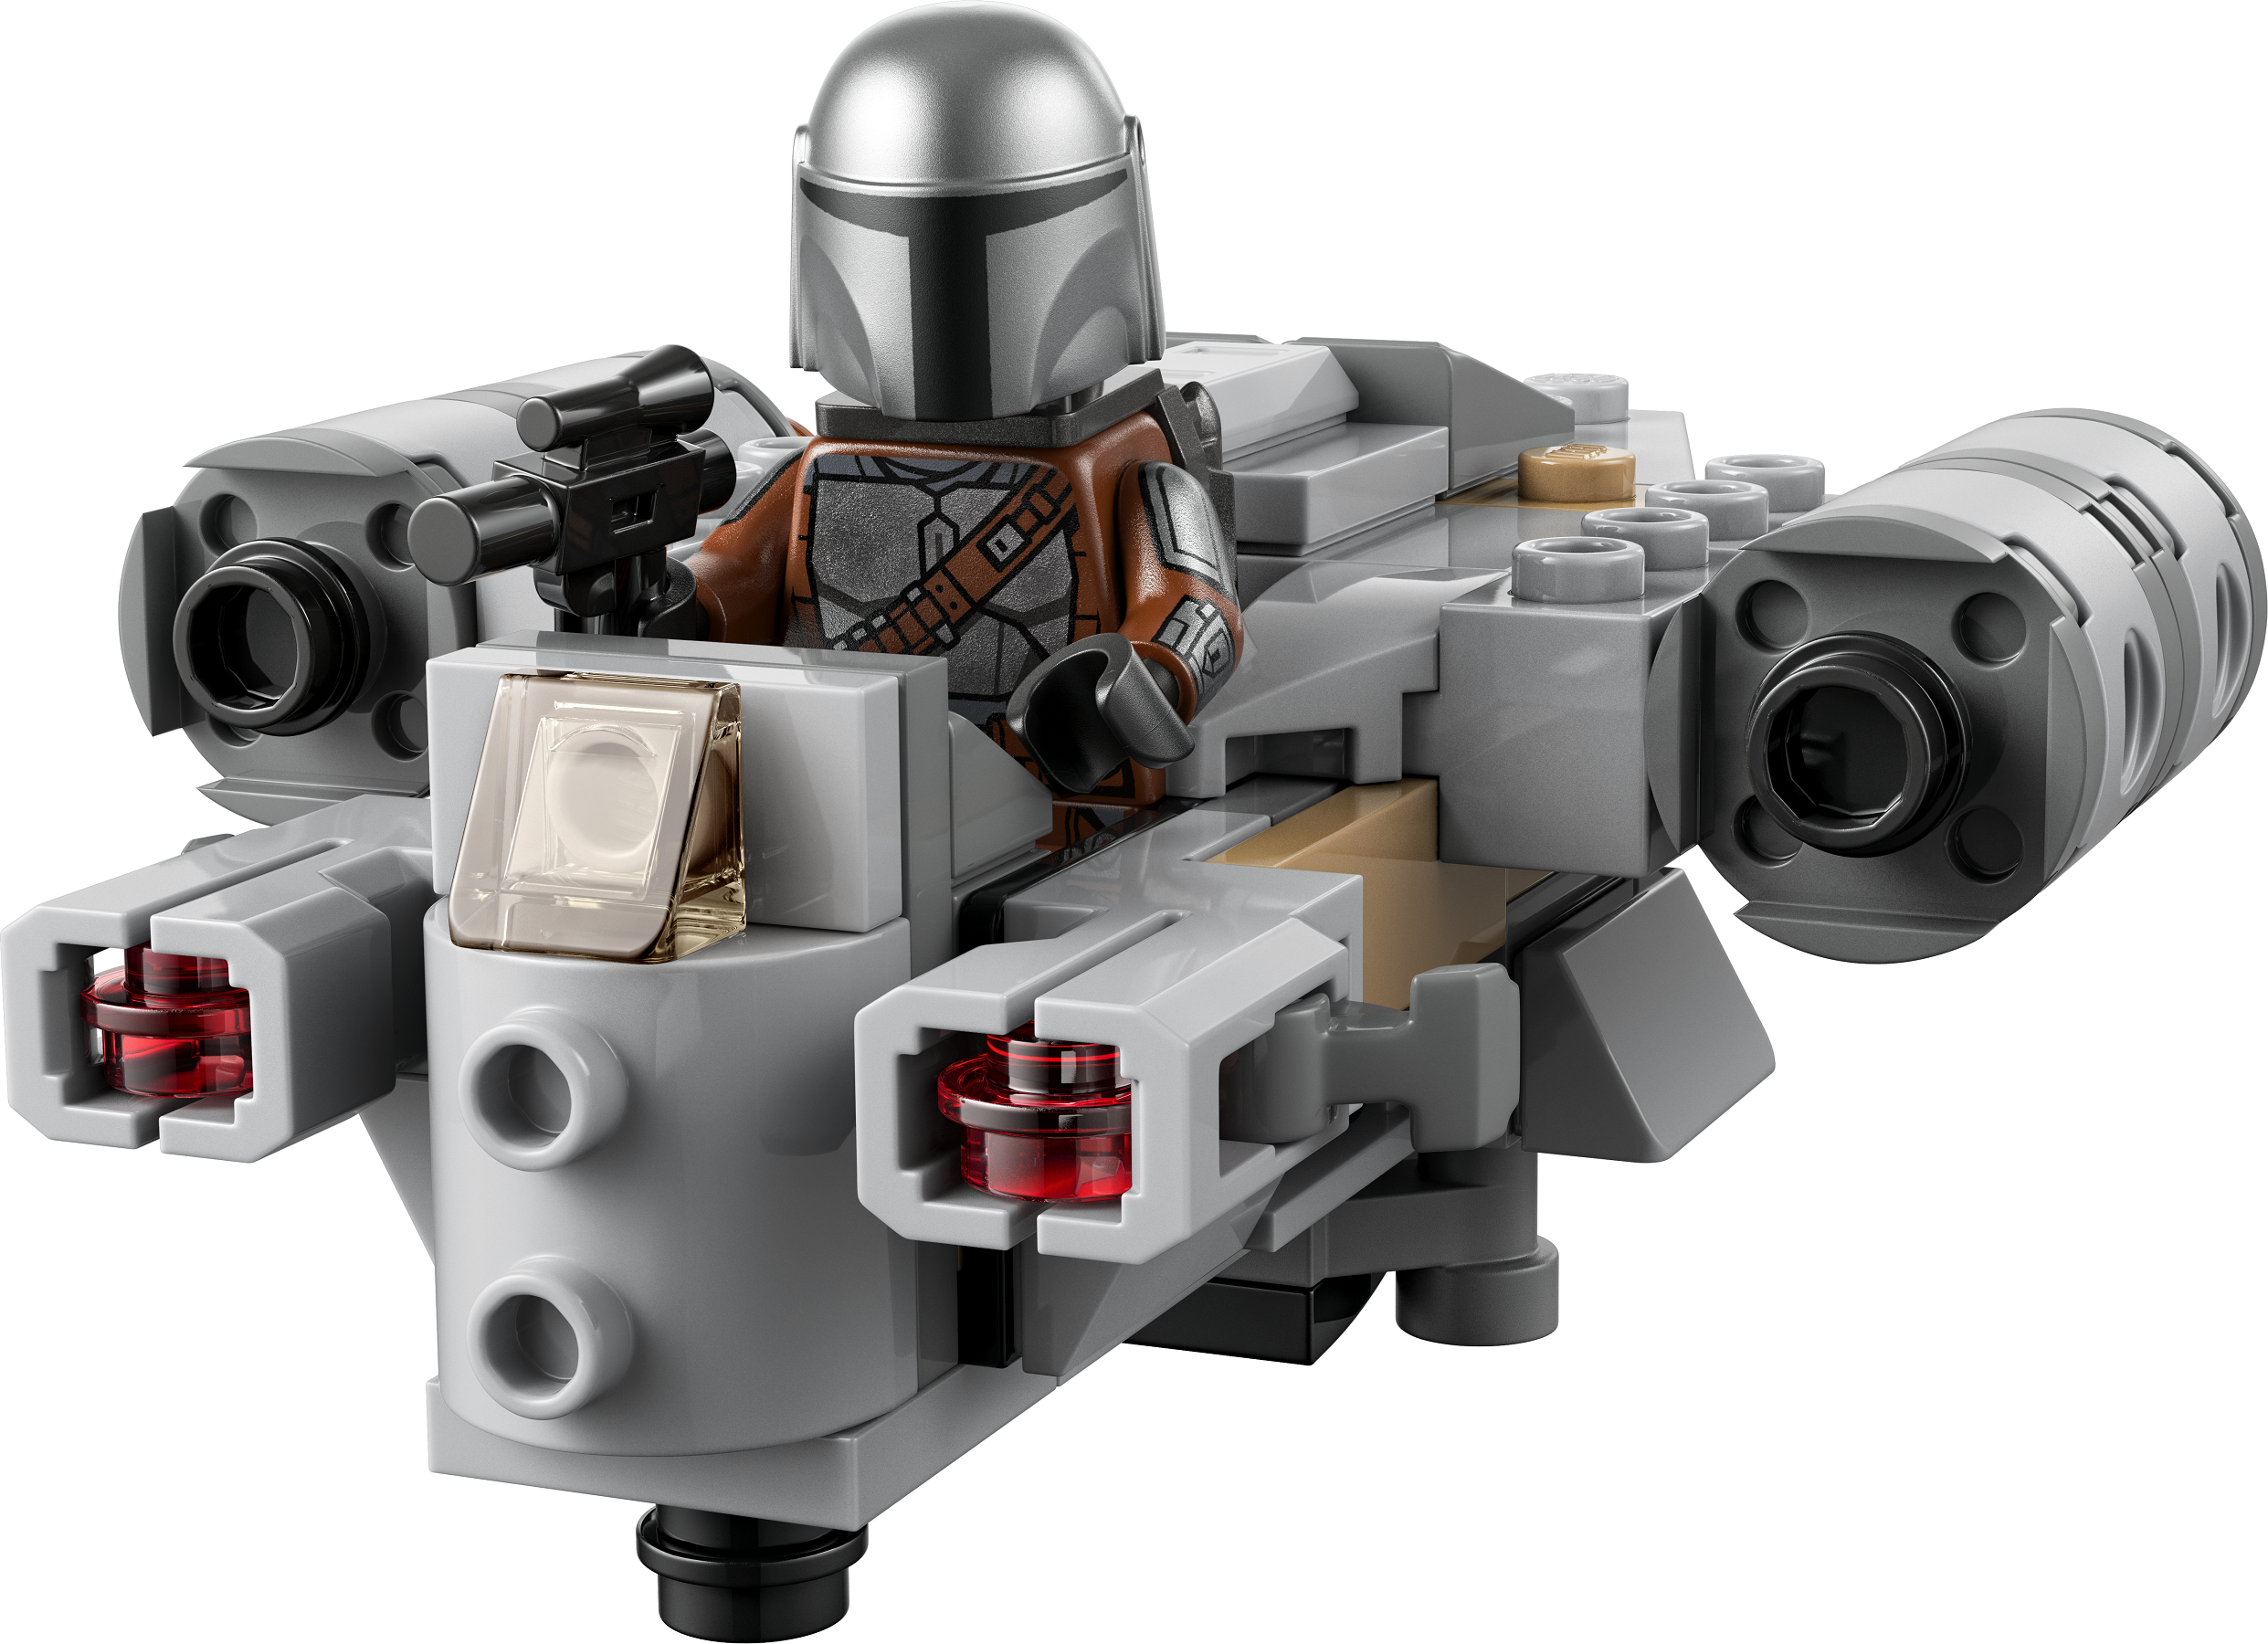 636 photos et images de Lego Star Wars - Getty Images